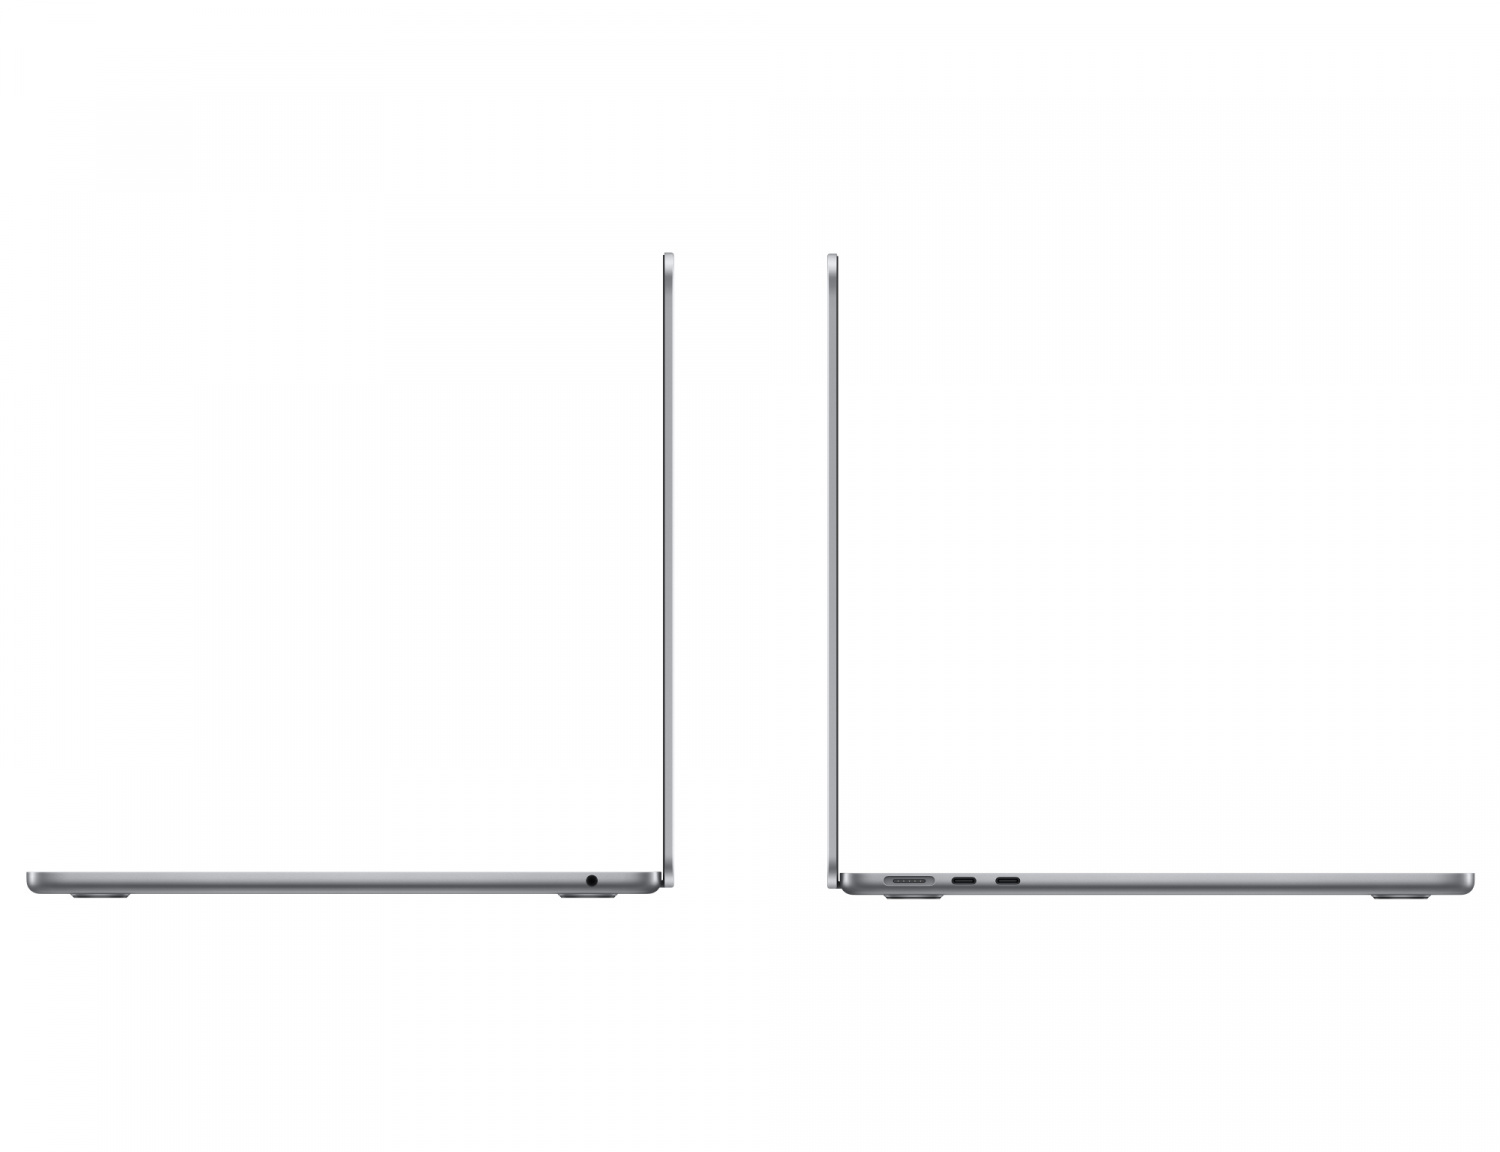 Купить ноутбук apple macbook air 13 retina (m2 8-core gpu 10-core, 8 gb, 512 gb) space gray (mlxx3) Apple MacBook Air в официальном магазине Apple, Samsung, Xiaomi. iPixel.ru Купить, заказ, кредит, рассрочка, отзывы,  характеристики, цена,  фотографии, в подарок.